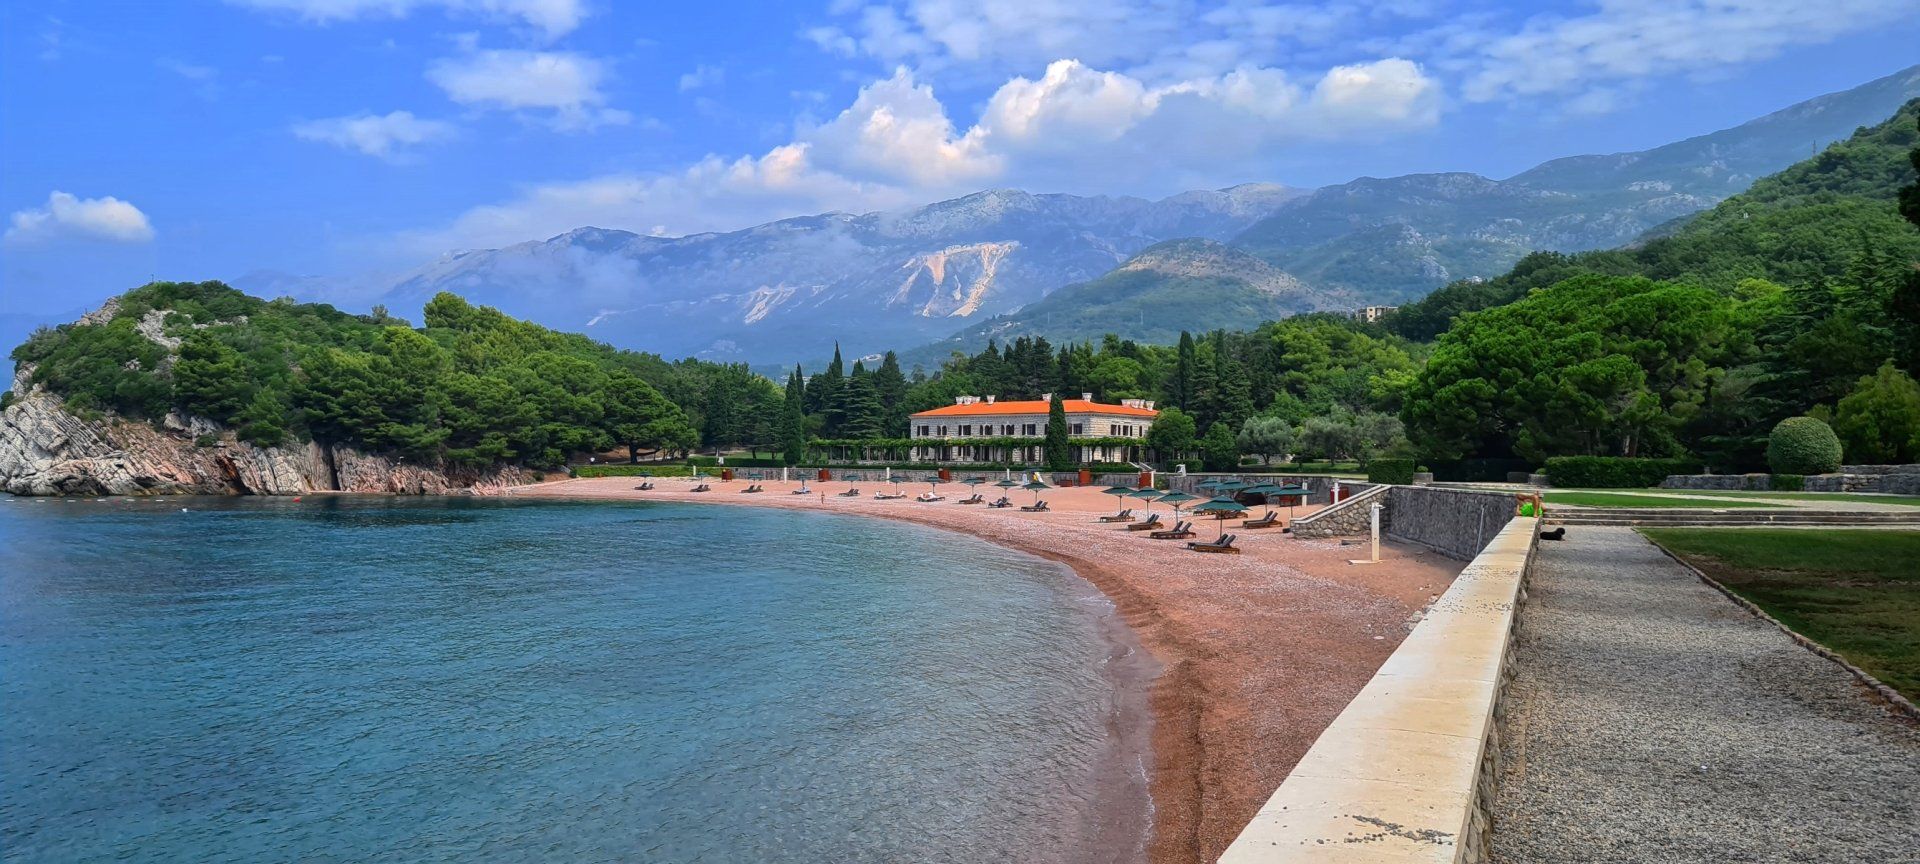 Villa Milocer sveti stefan montenegro